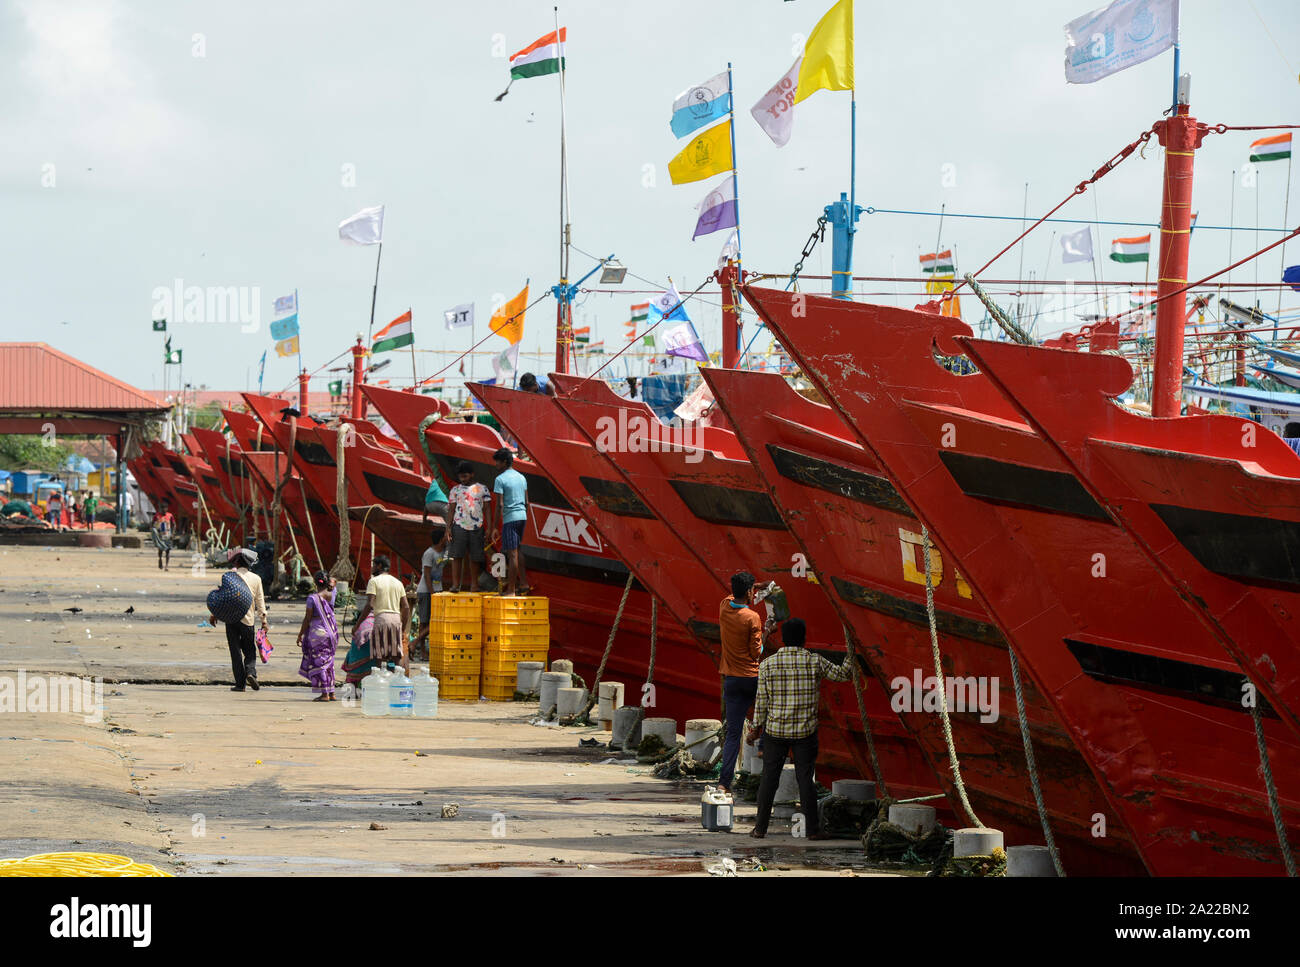 INDIA, Karnataka, Mangaluru, former name Mangalore, trawler in fishing port during monsoon Stock Photo